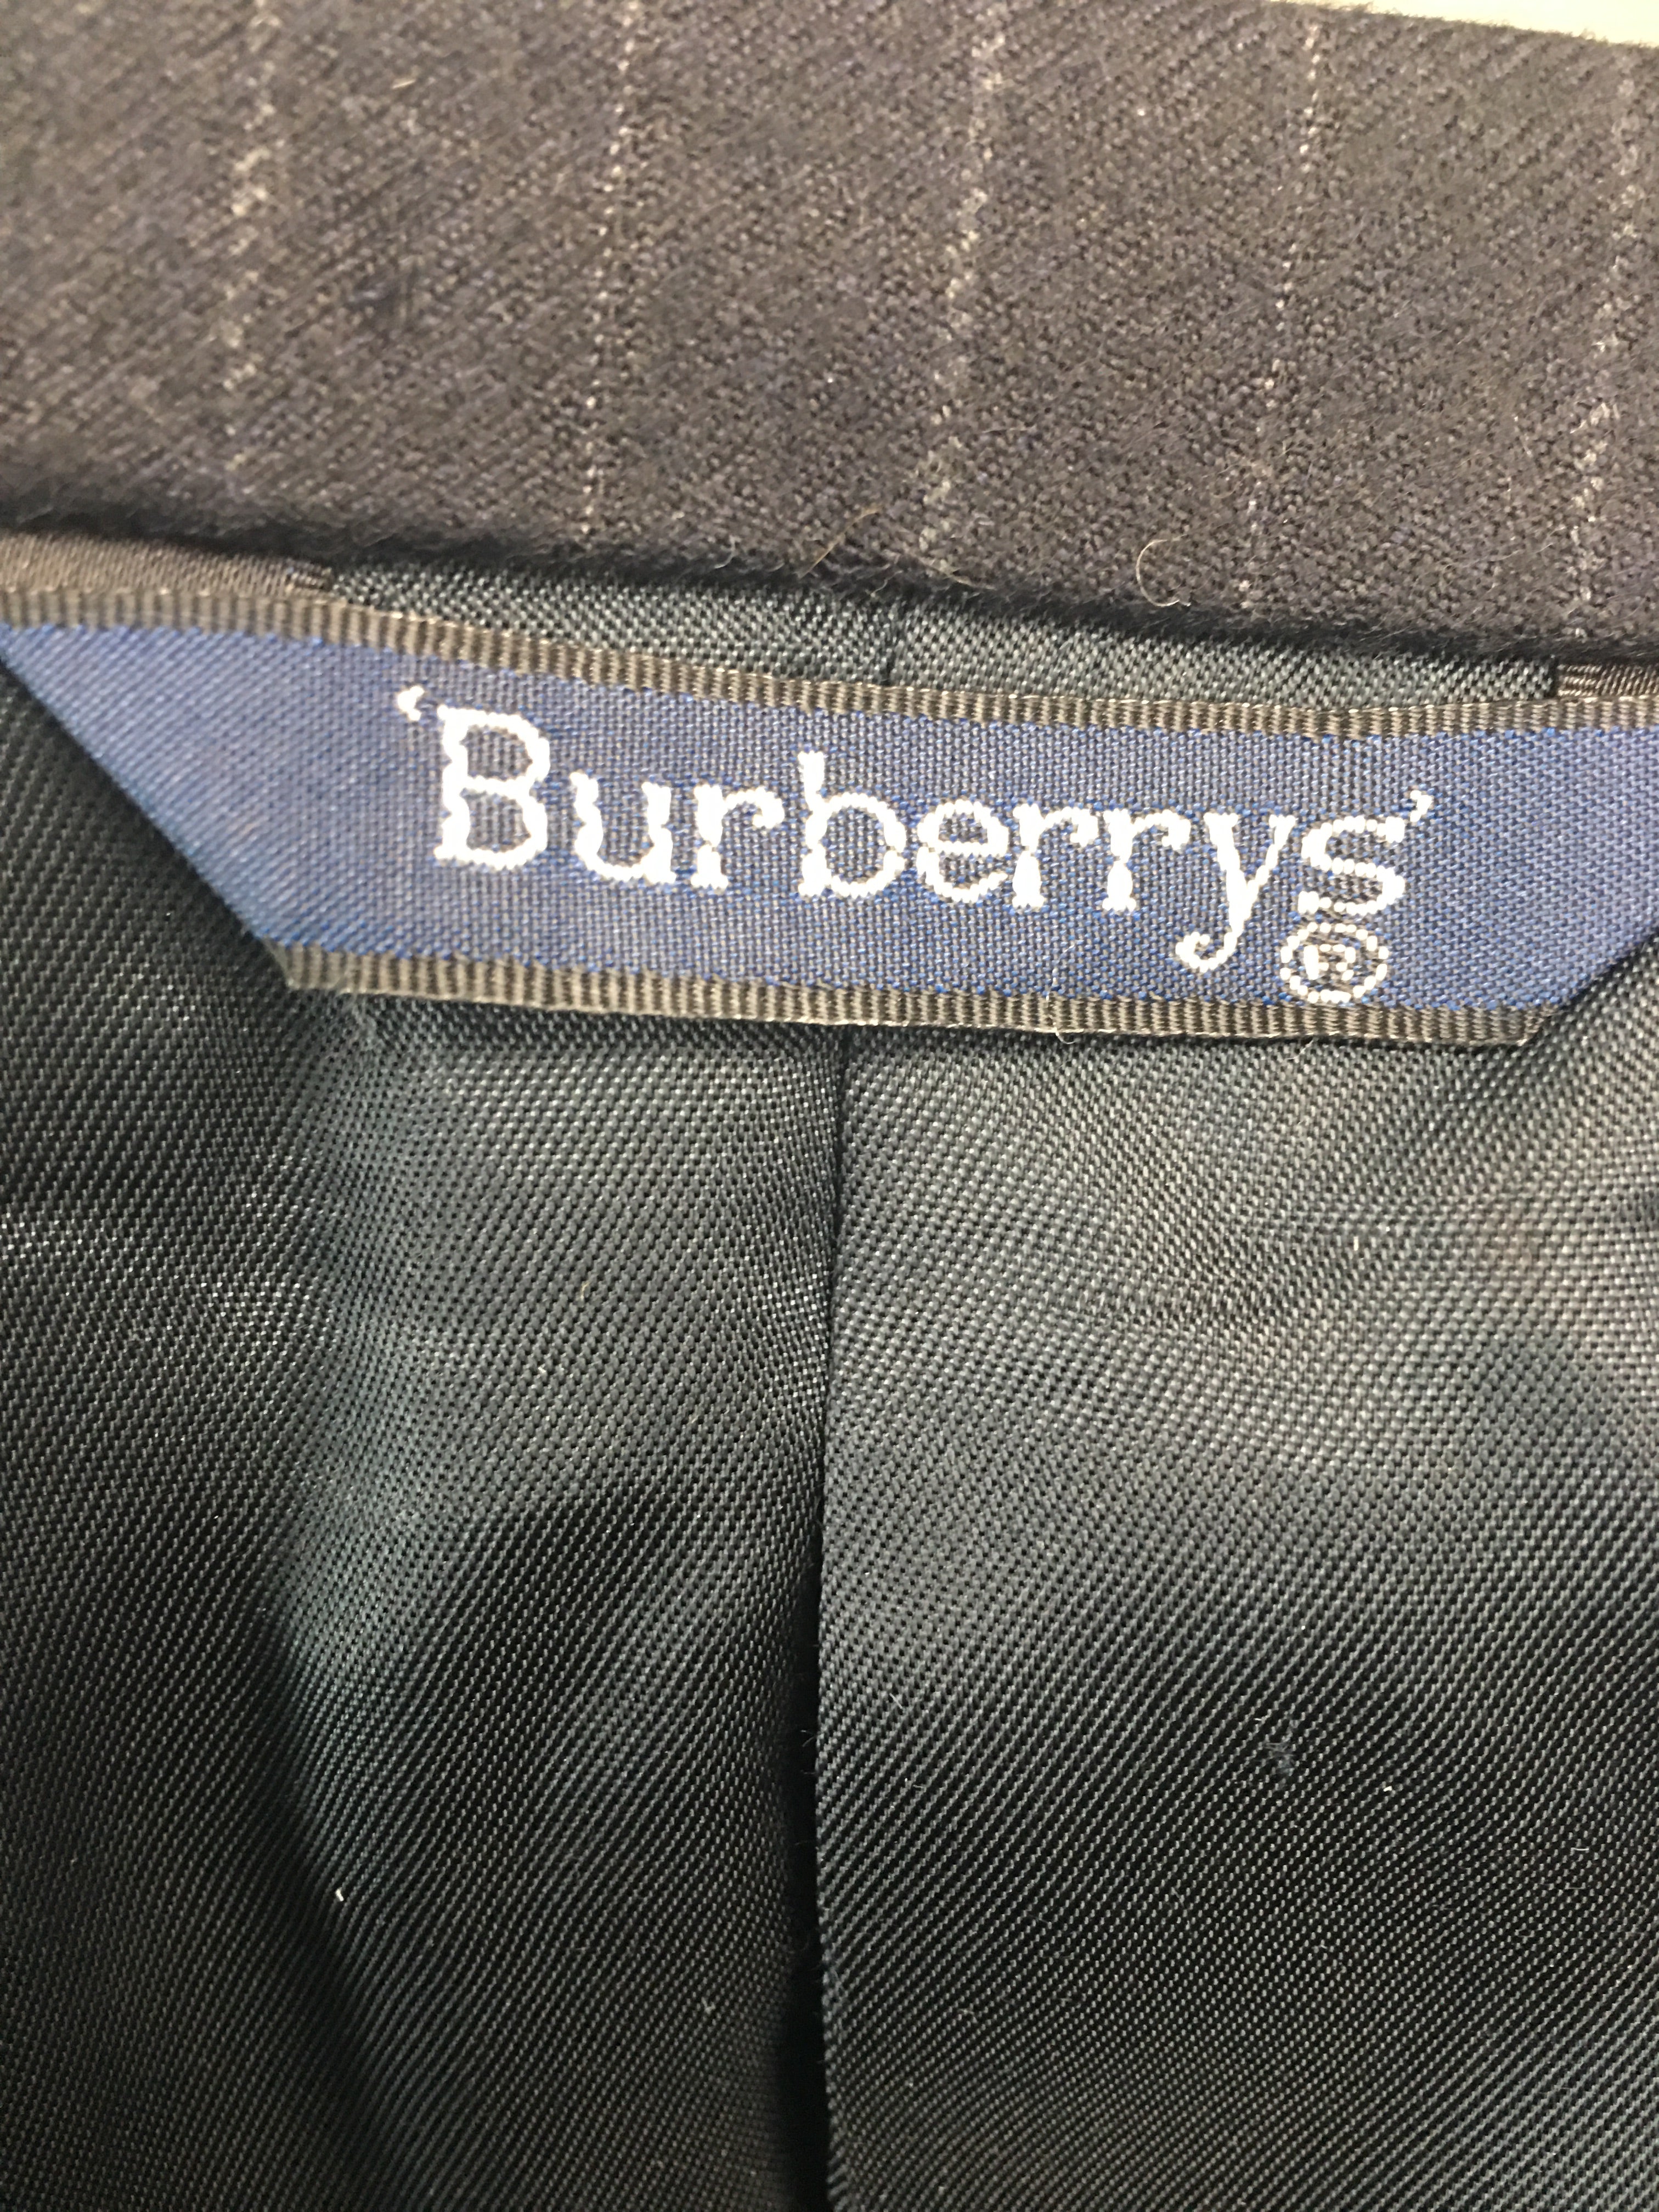 Burberry coat - Vanity's Vault